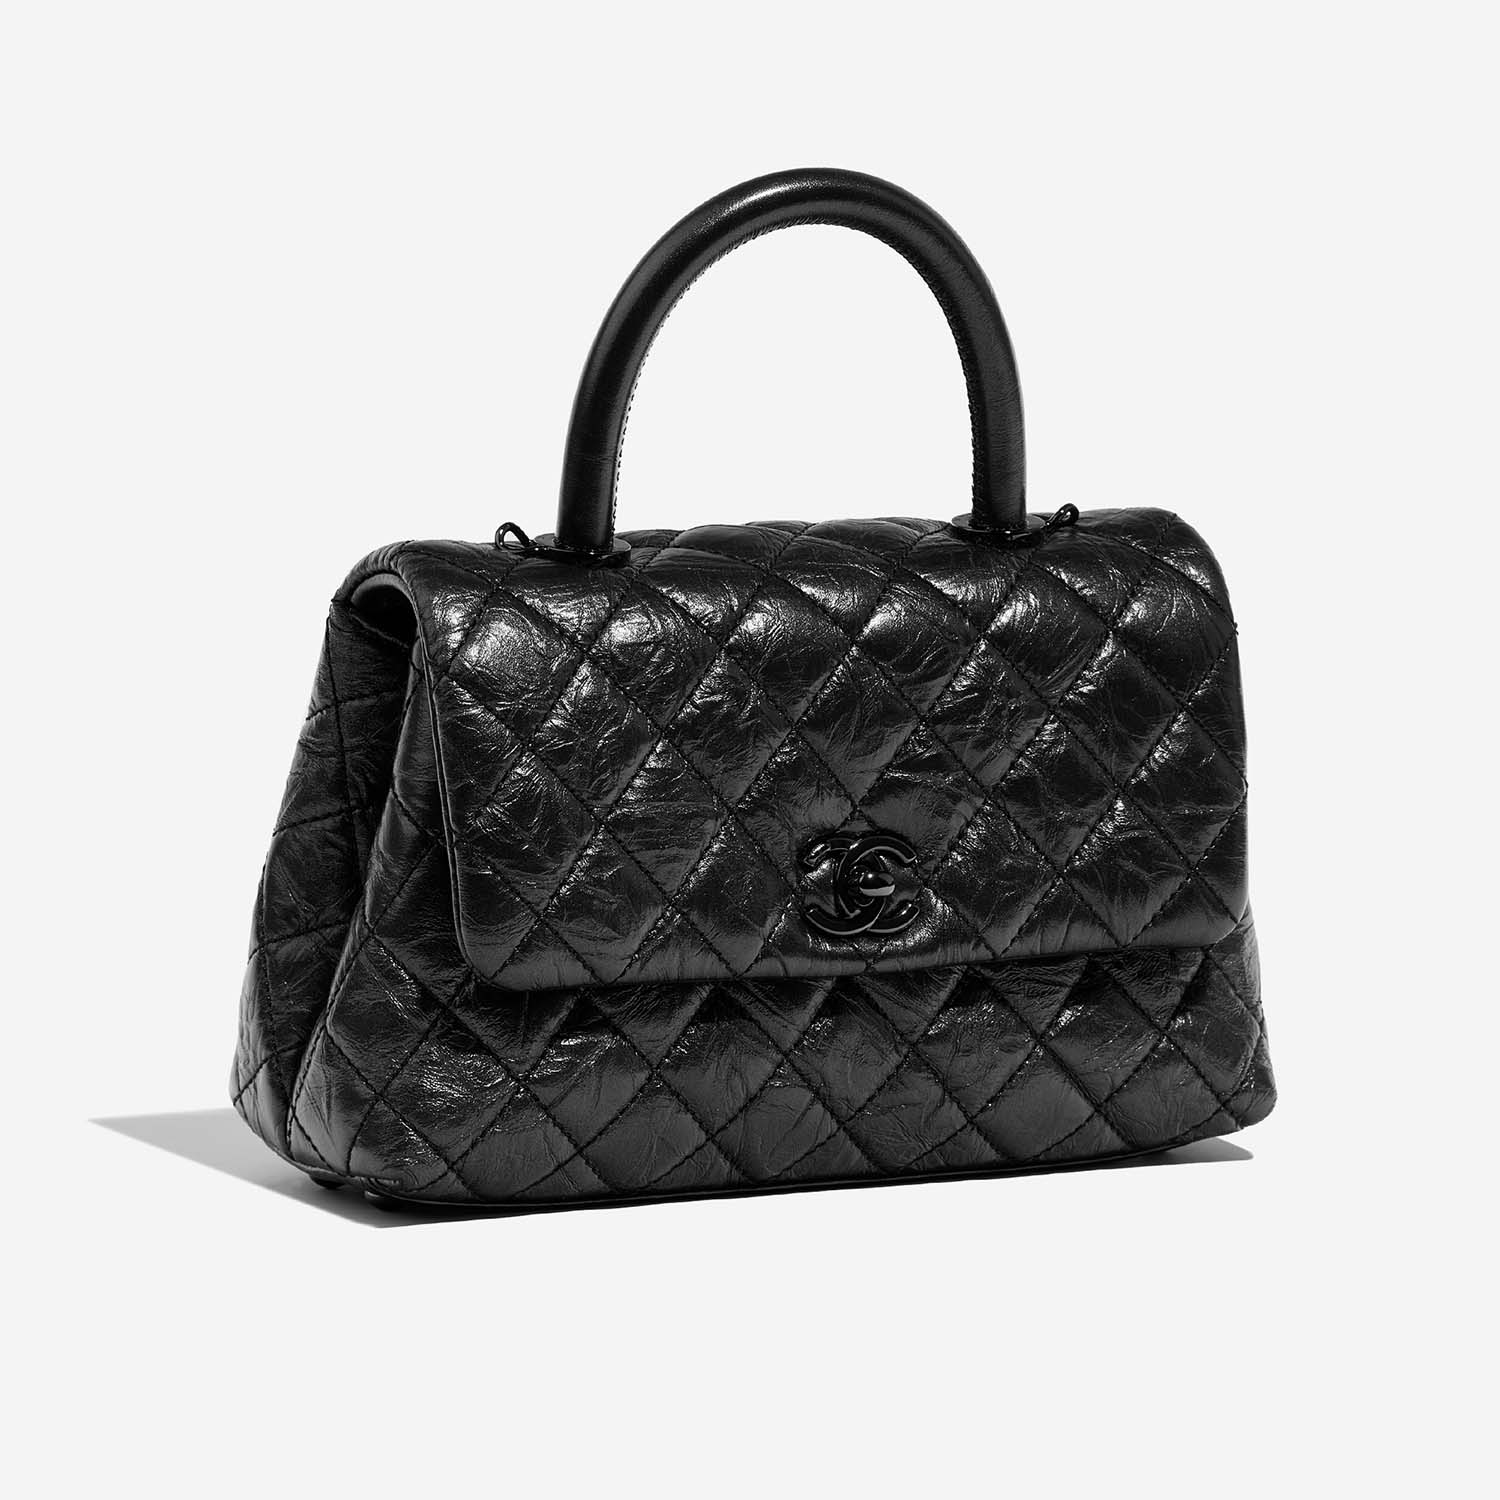 Chanel TimelessHandle Small Black 6SF S | Verkaufen Sie Ihre Designer-Tasche auf Saclab.com